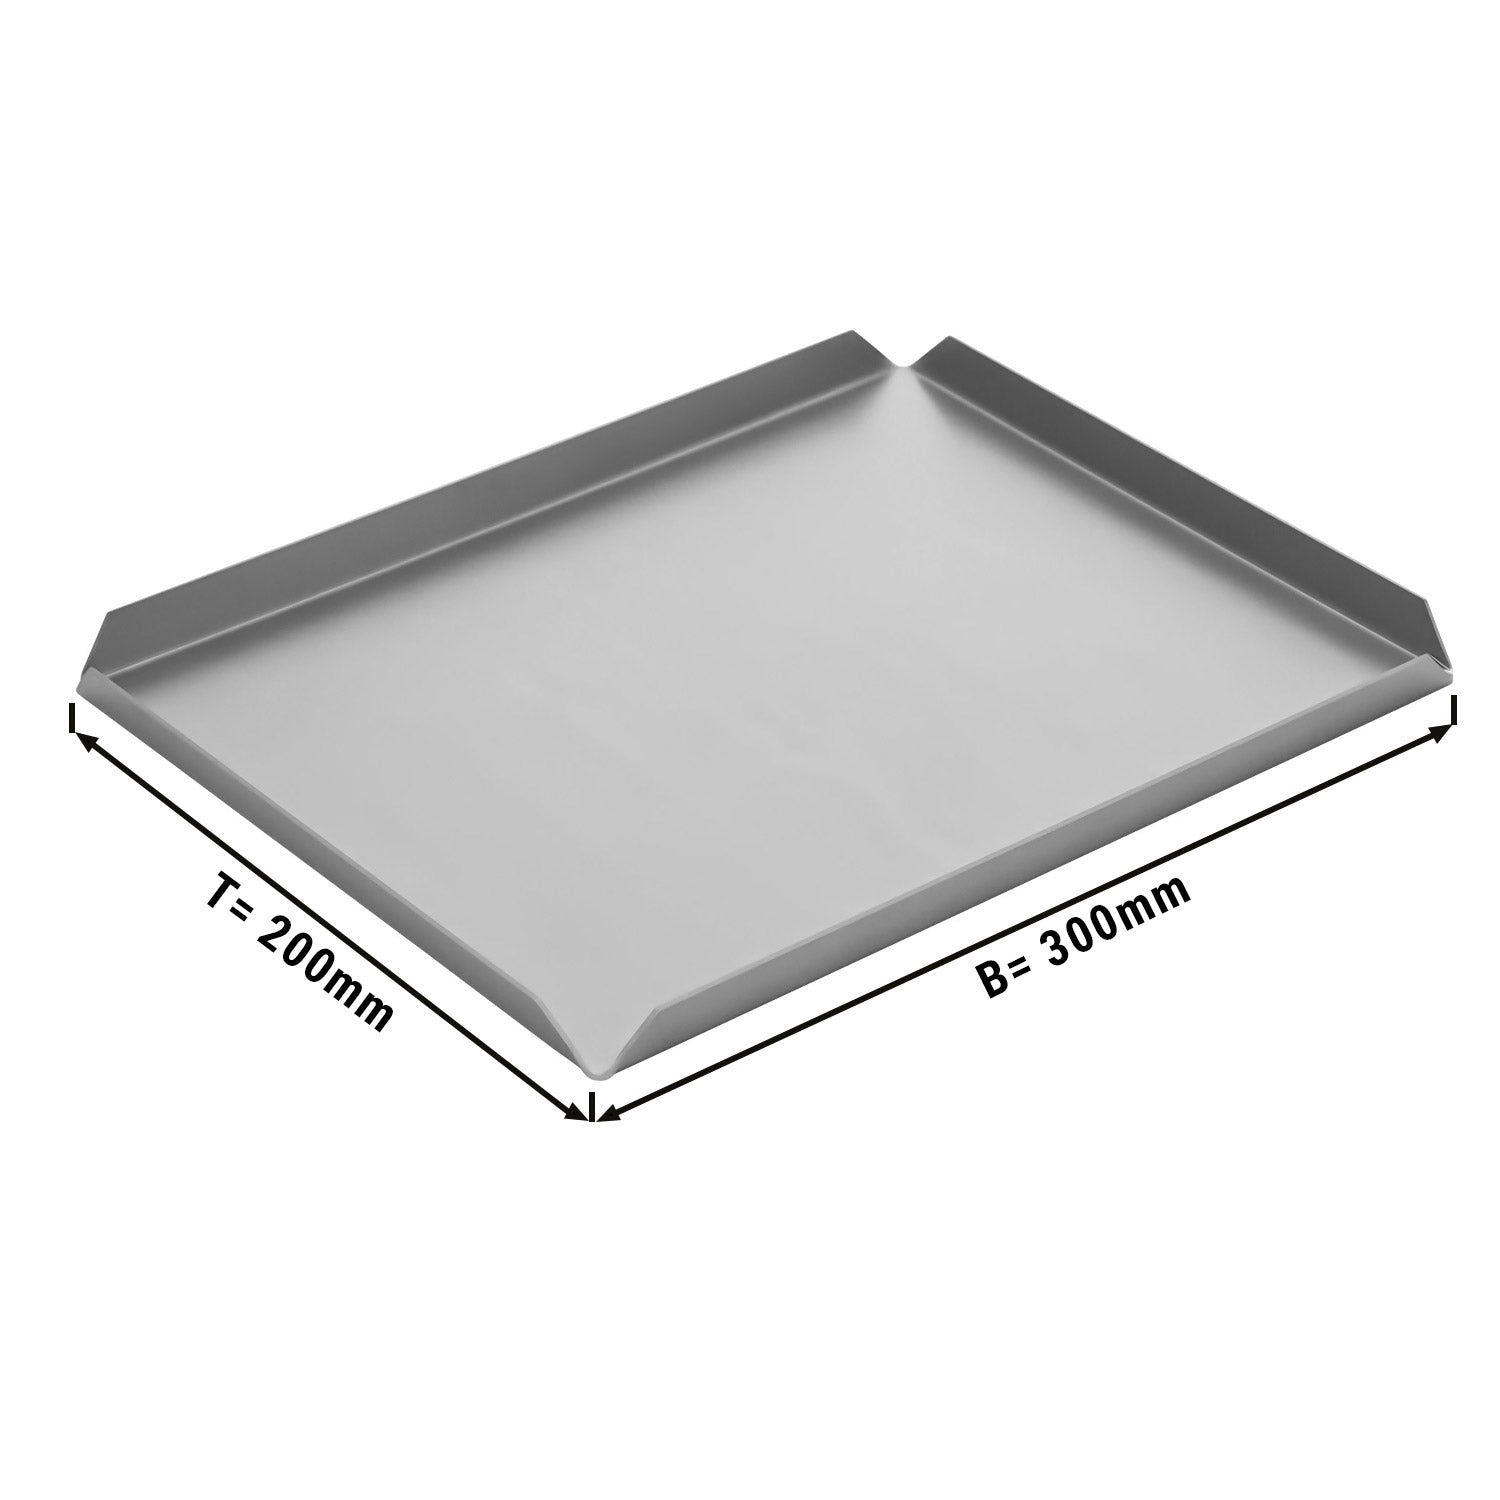 (5 stk.) Konfekture/ & præsentationsplade af aluminium - 300 x 200 x 10 mm - aluminium